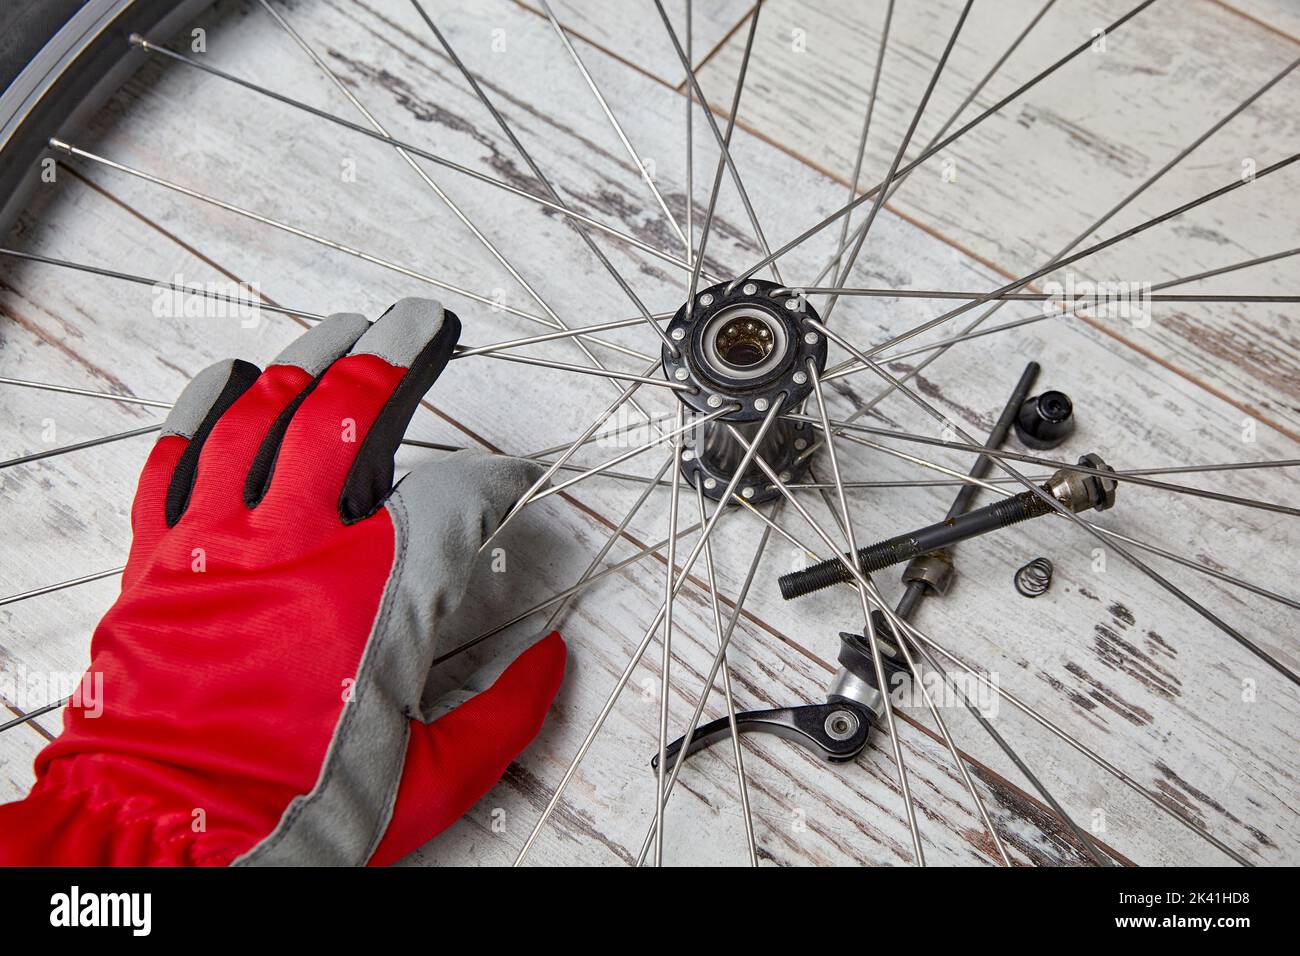 Desmontar y lubricar con aceite los rodamientos de la rueda de bicicleta. Reparación de bicicletas por cuenta propia Foto de stock